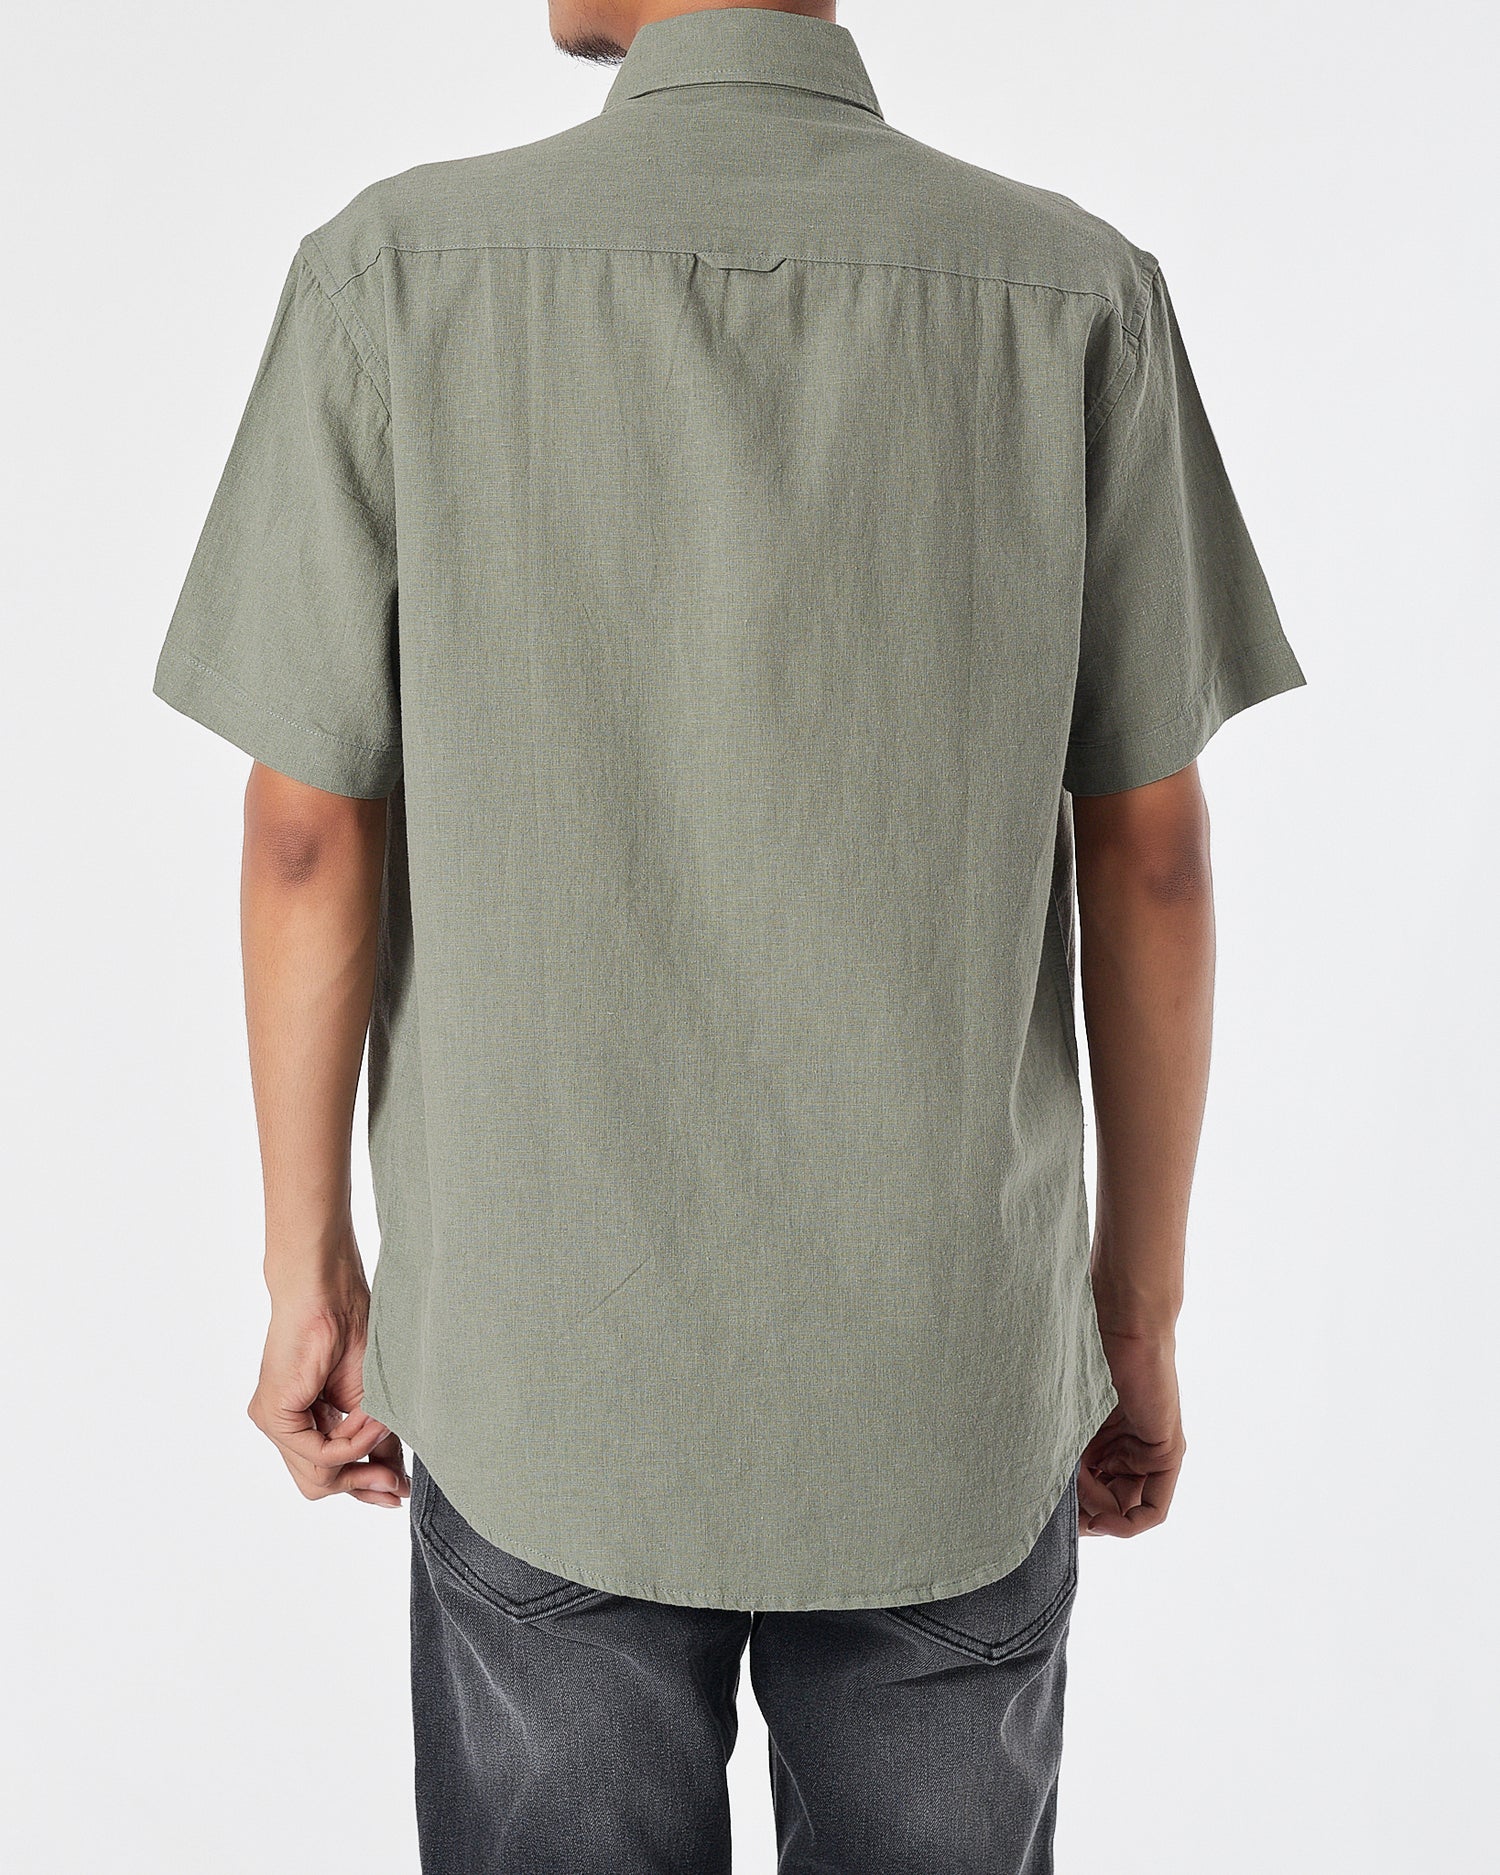 RL Casual Linen Men Green Shirts Short Sleeve 20.90